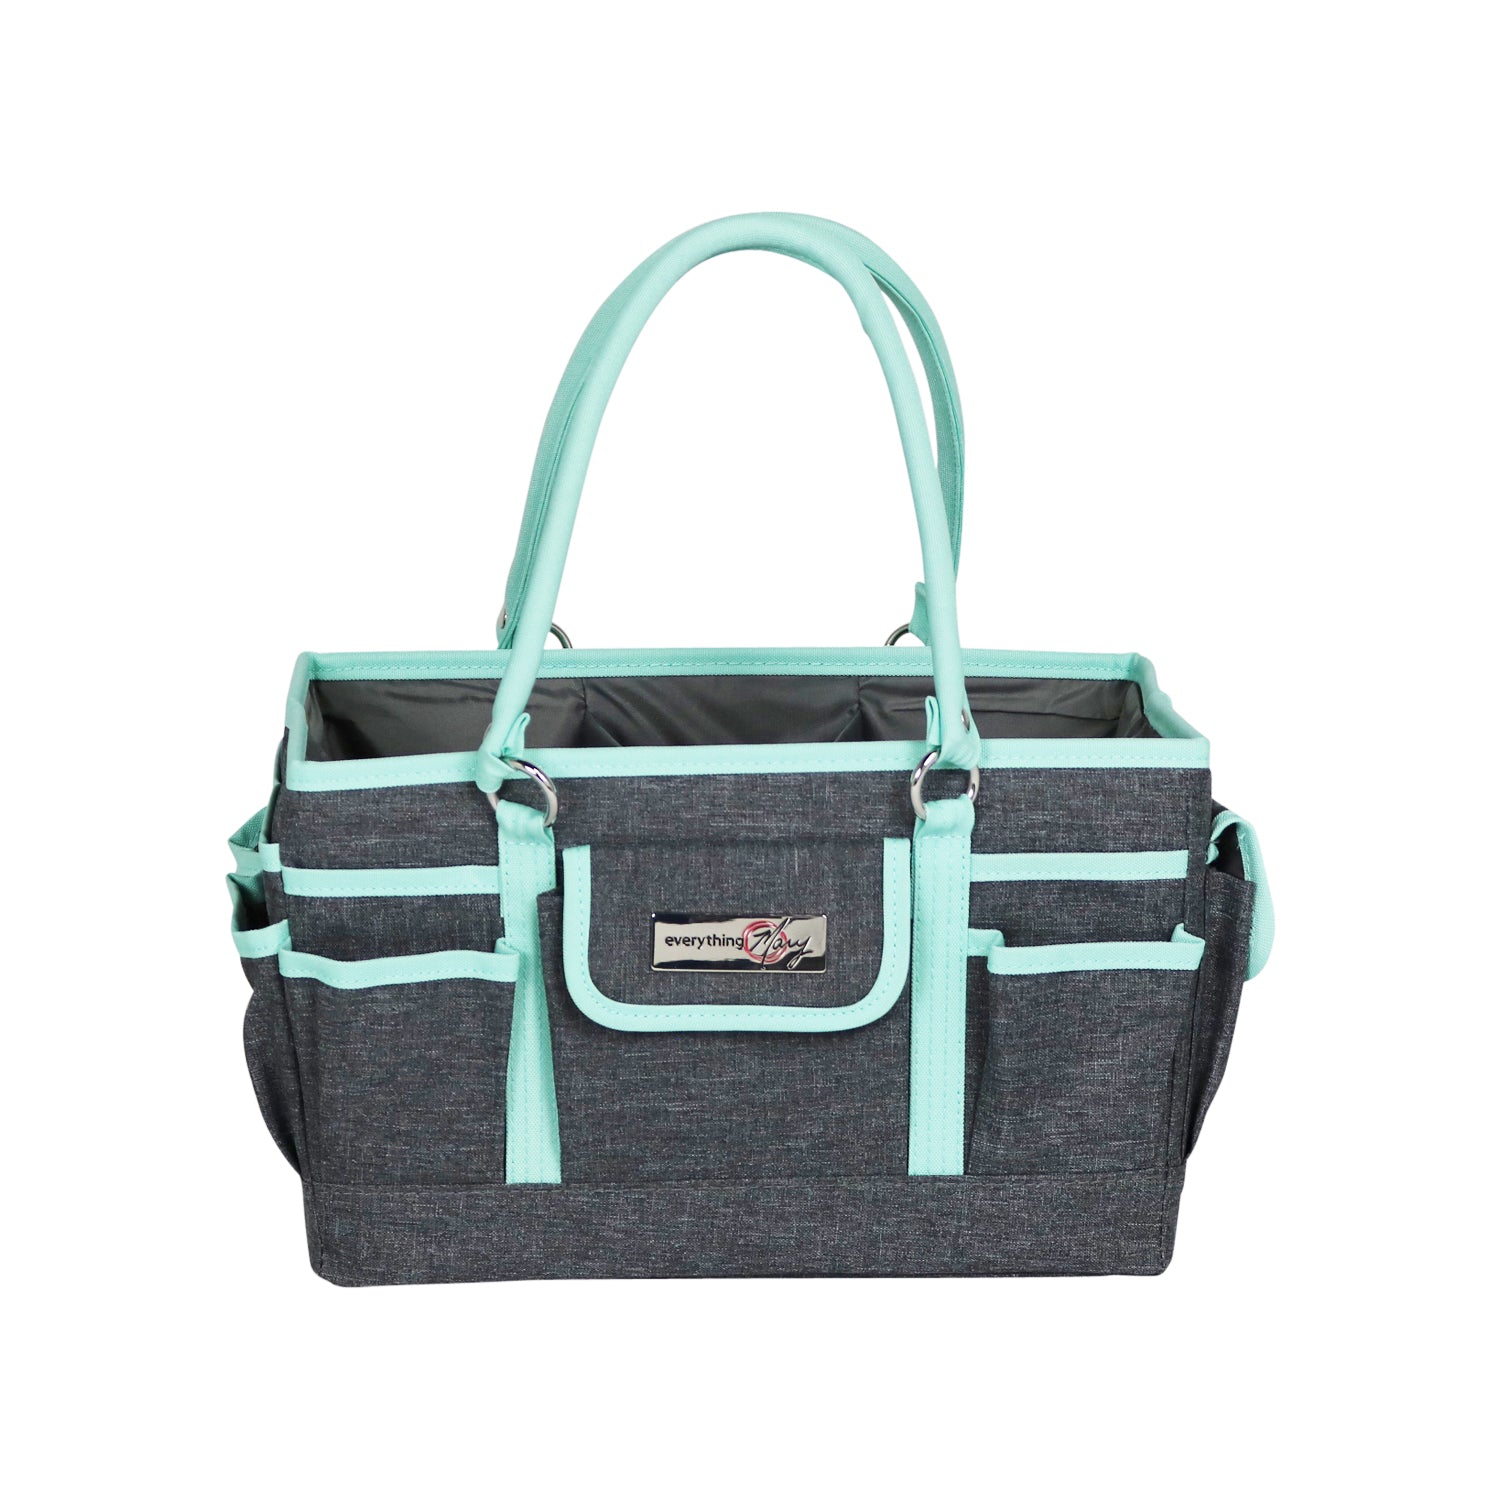 DELUXE Summer Tote – Virginia Handbags